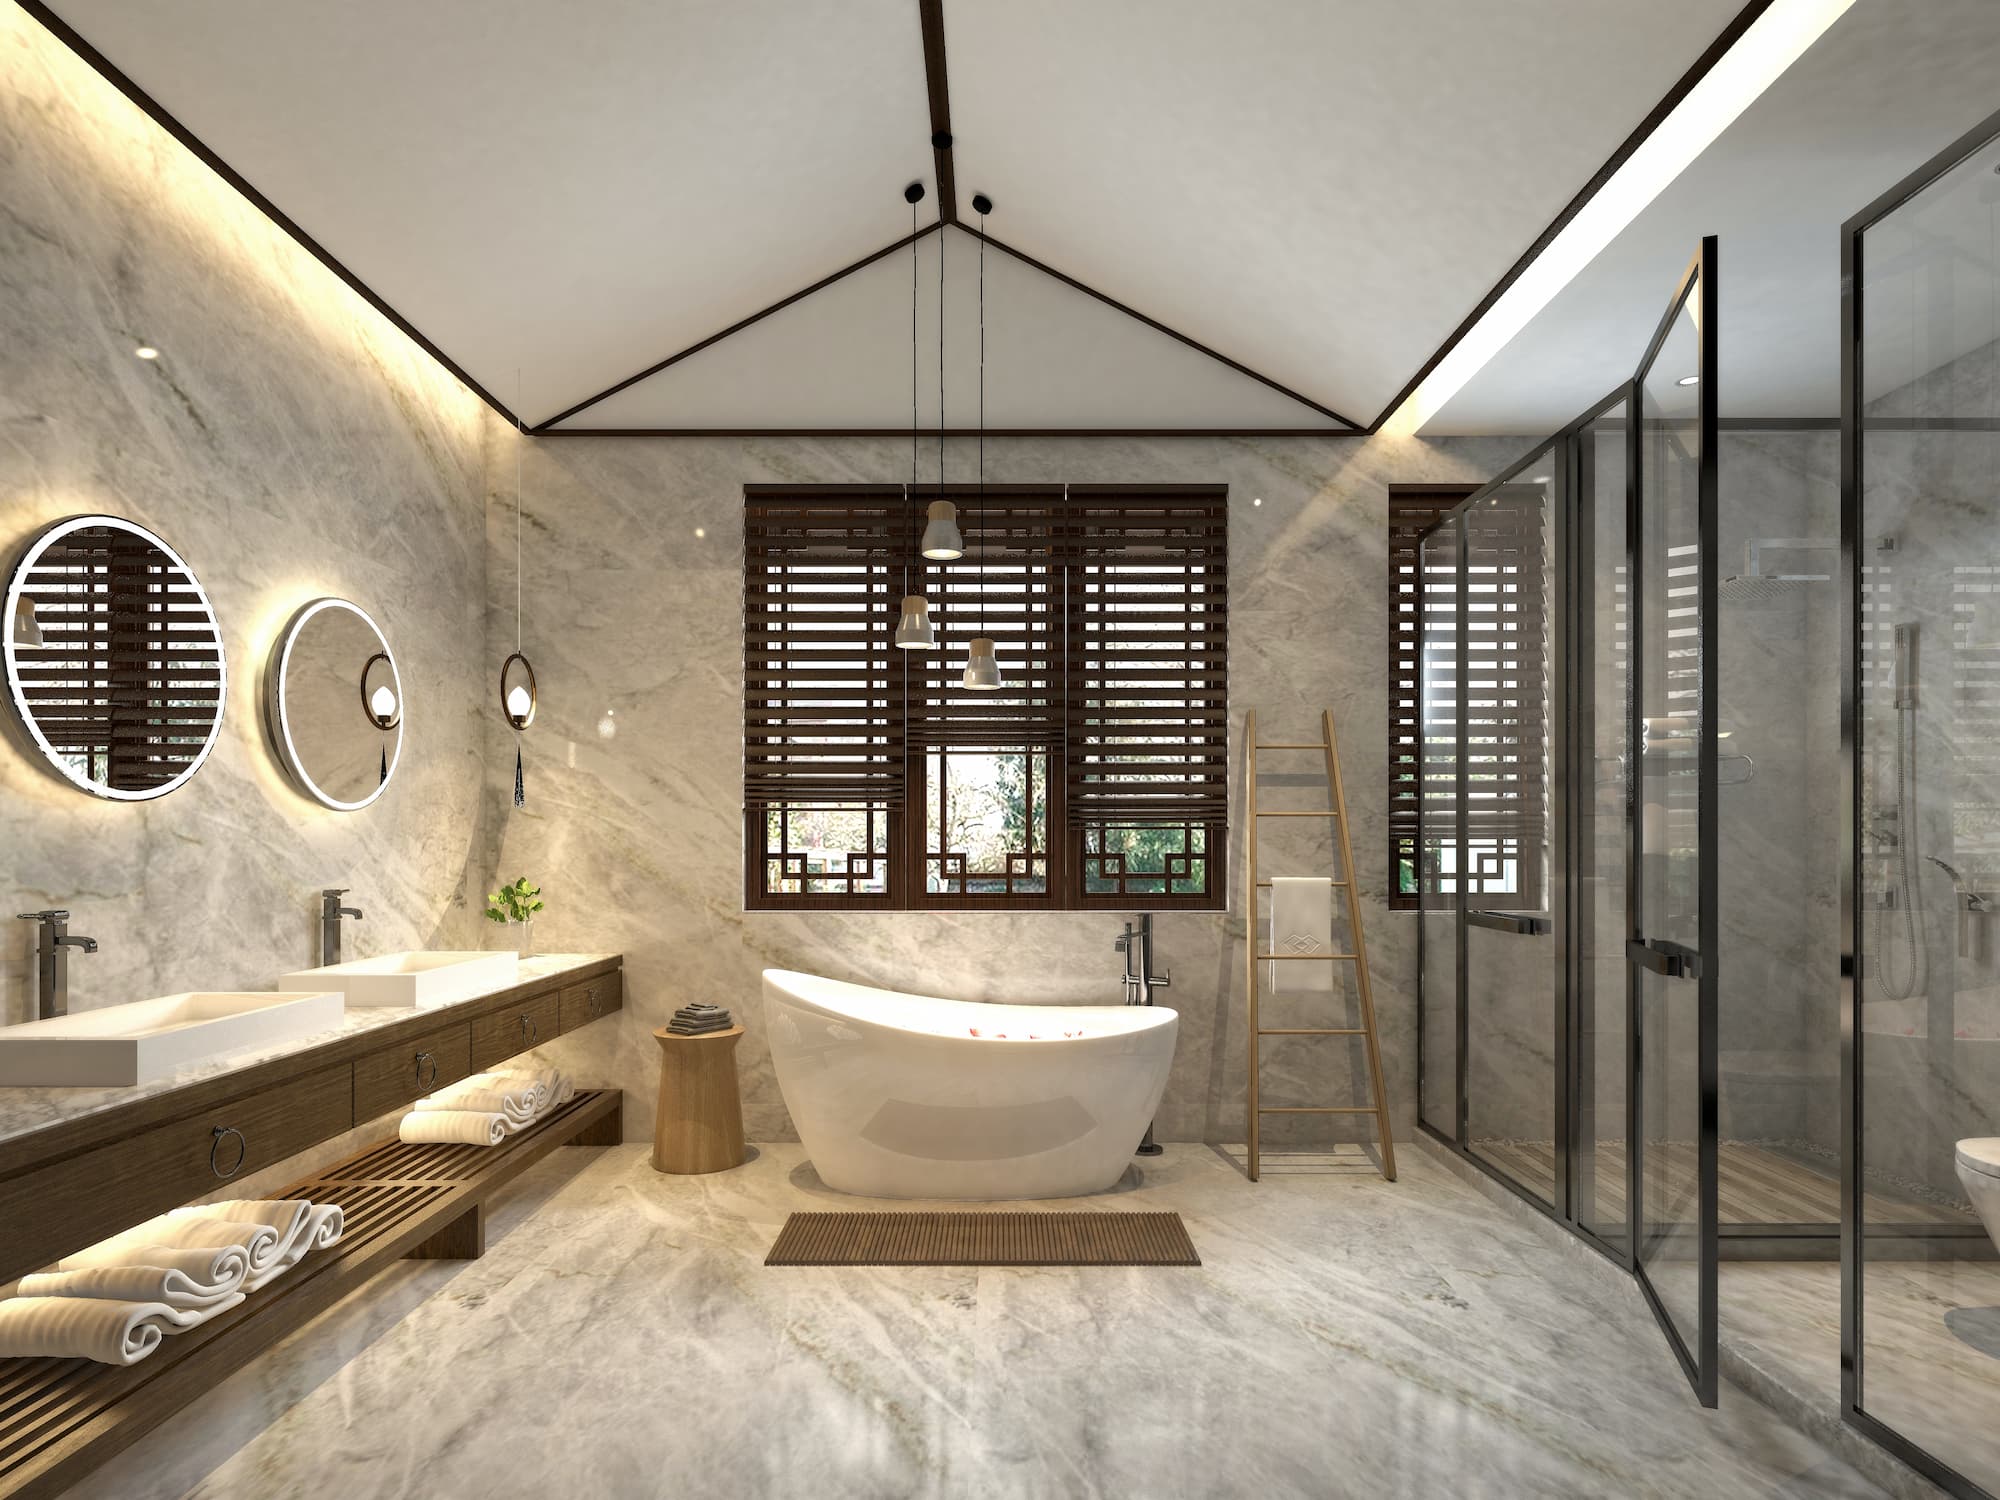 Quels matériaux privilégier pour une salle de bain durable et esthétique ? Ostwald